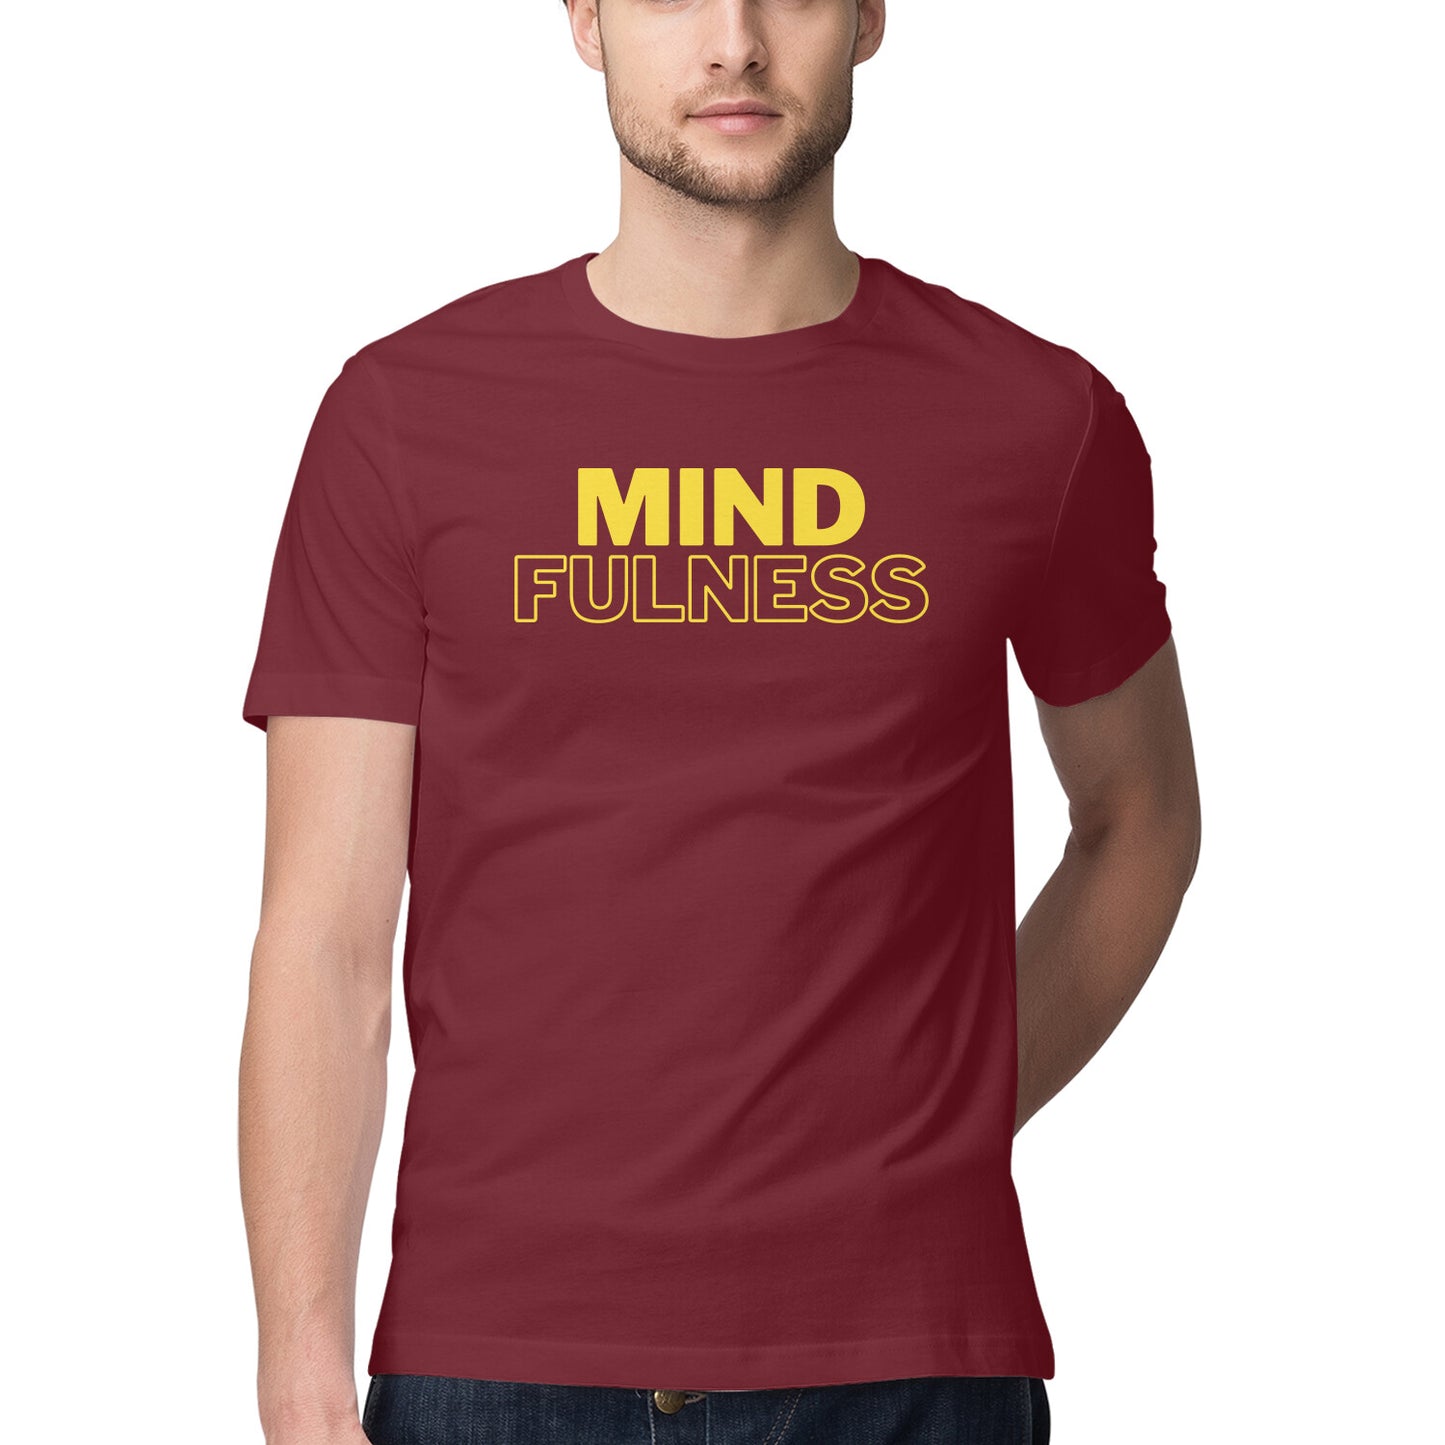 Mindfulness - Unisex Tshirt